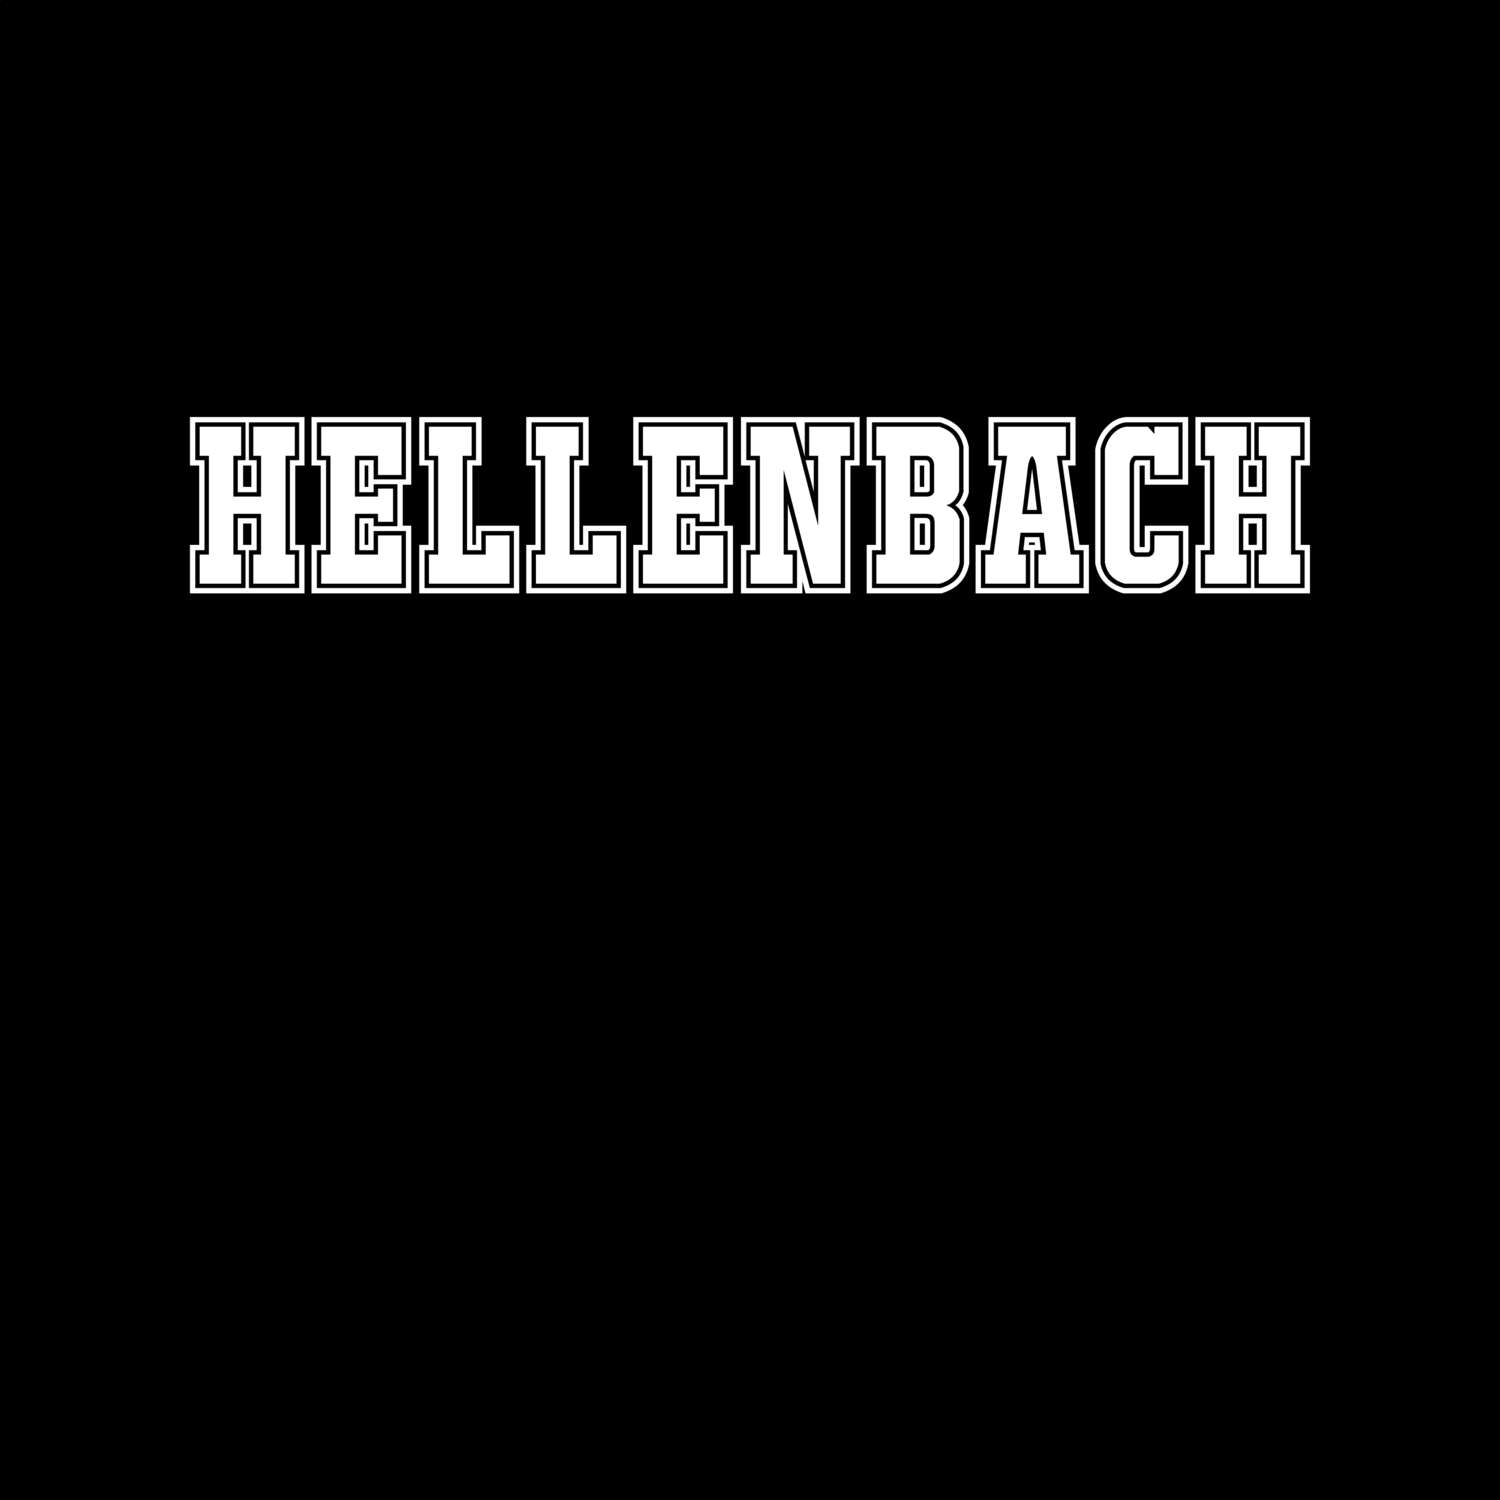 Hellenbach T-Shirt »Classic«